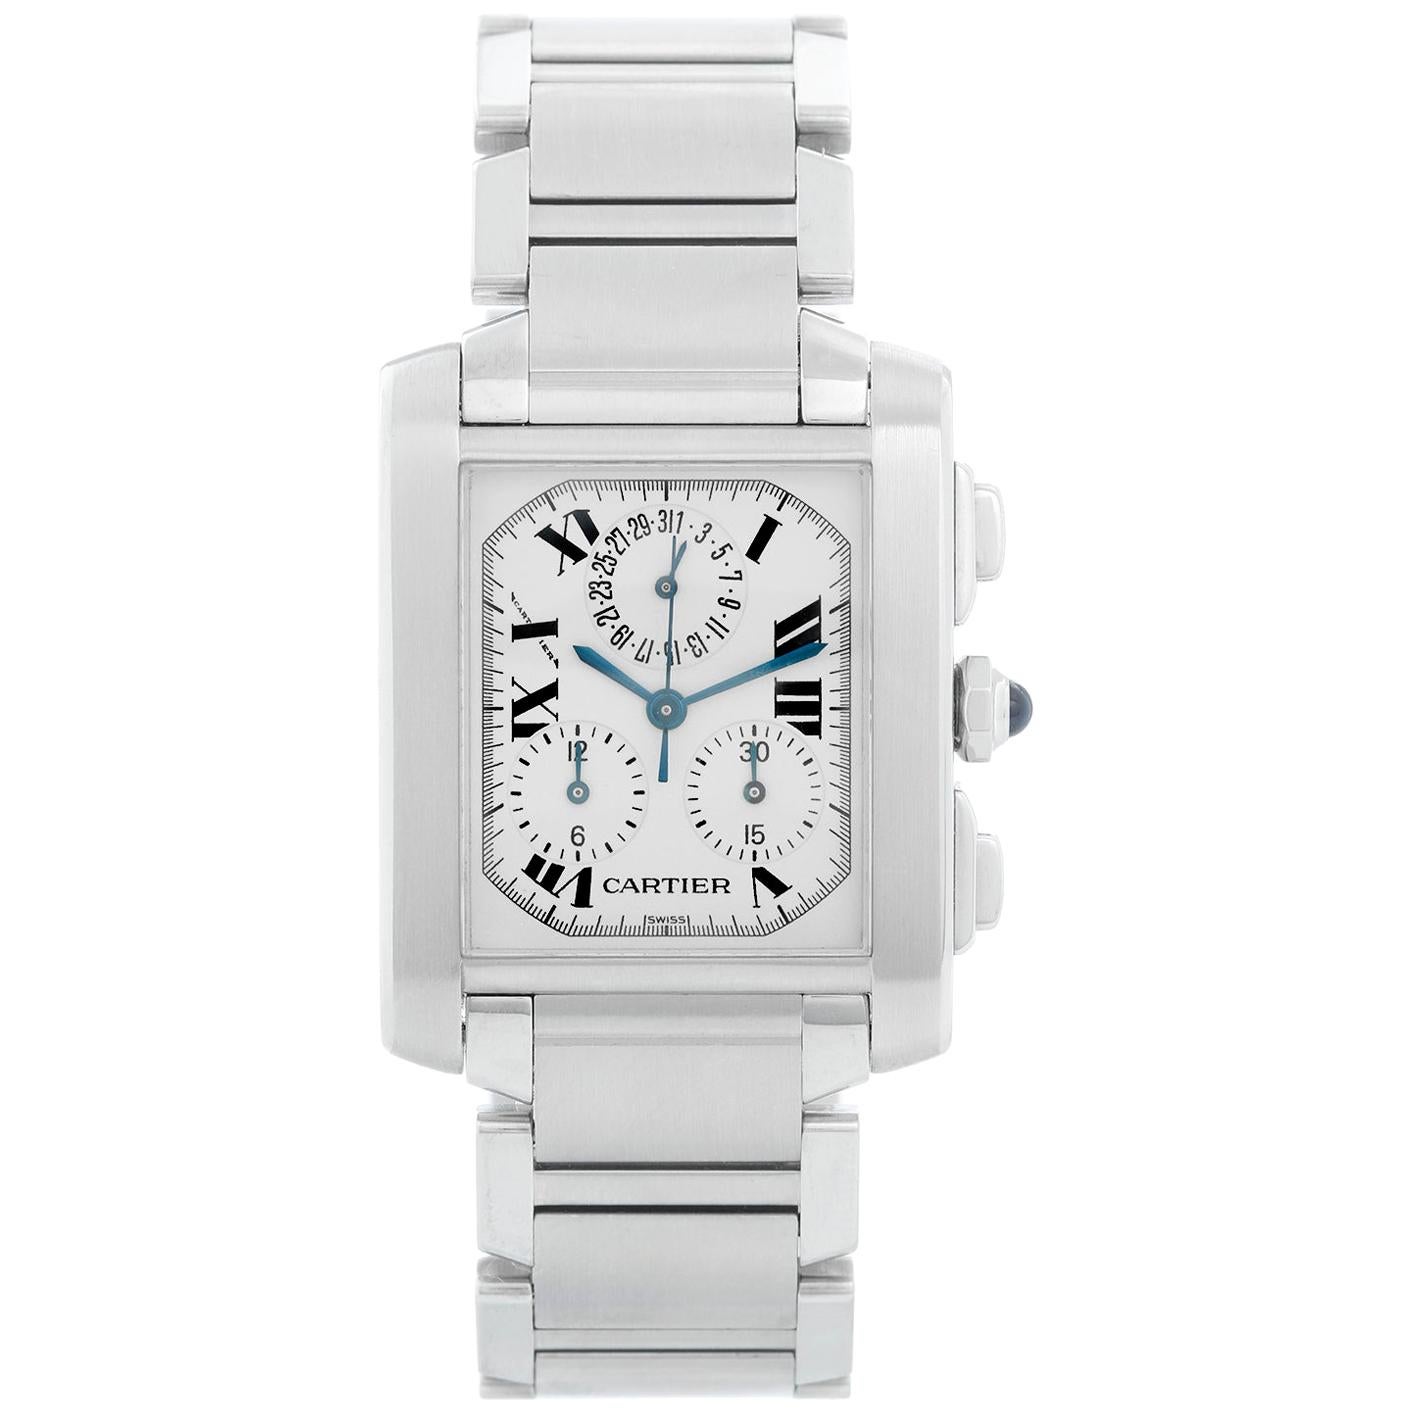 Cartier Tank Francaise Chronograph Men's Watch W51001Q3